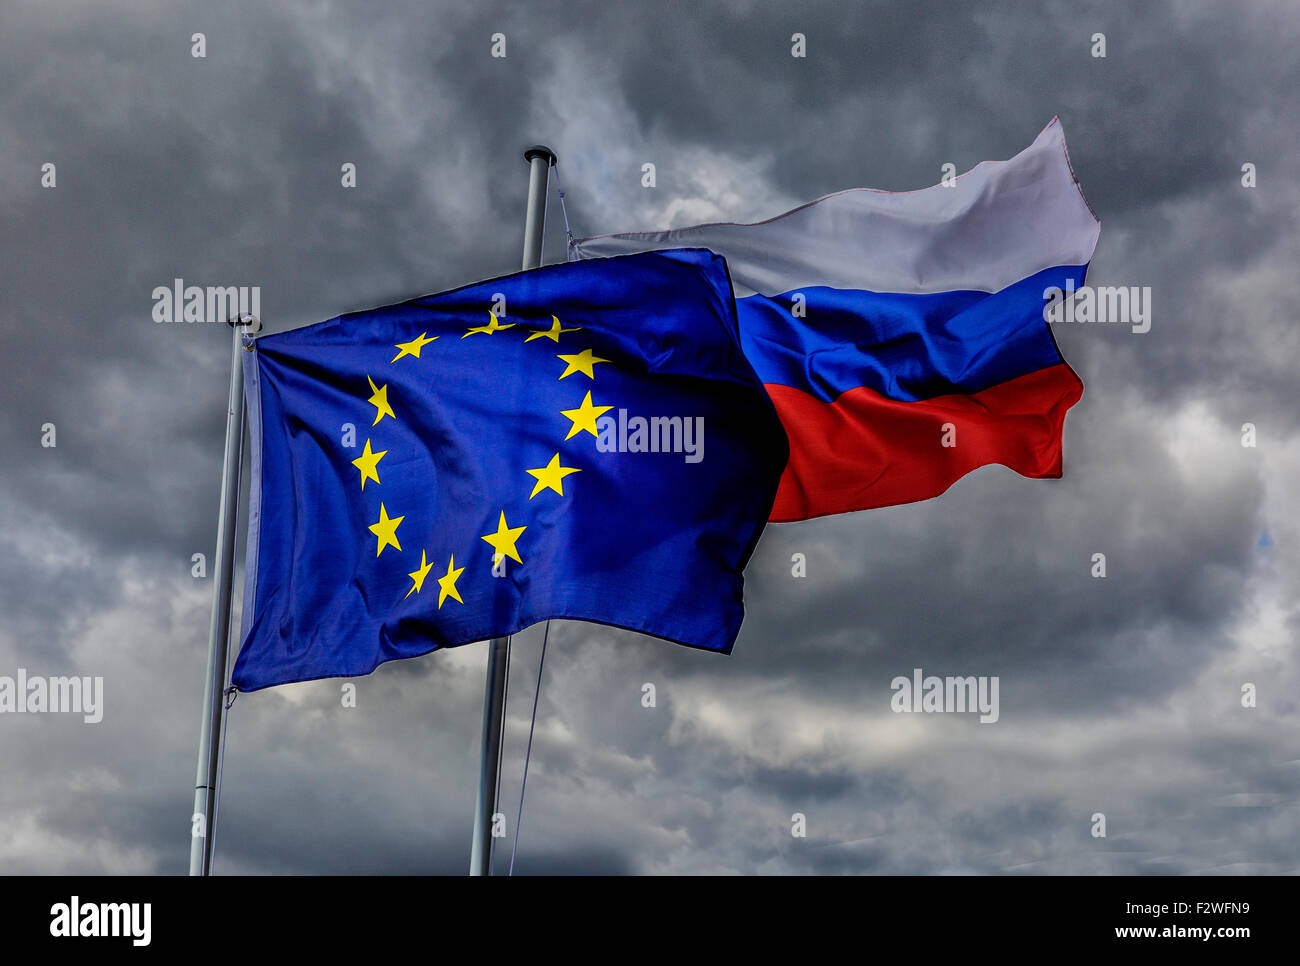 18.04.2015, Berlin, Berlin, Allemagne - drapeau européen et le drapeau de la Fédération de Russie dans le vent. Banque D'Images